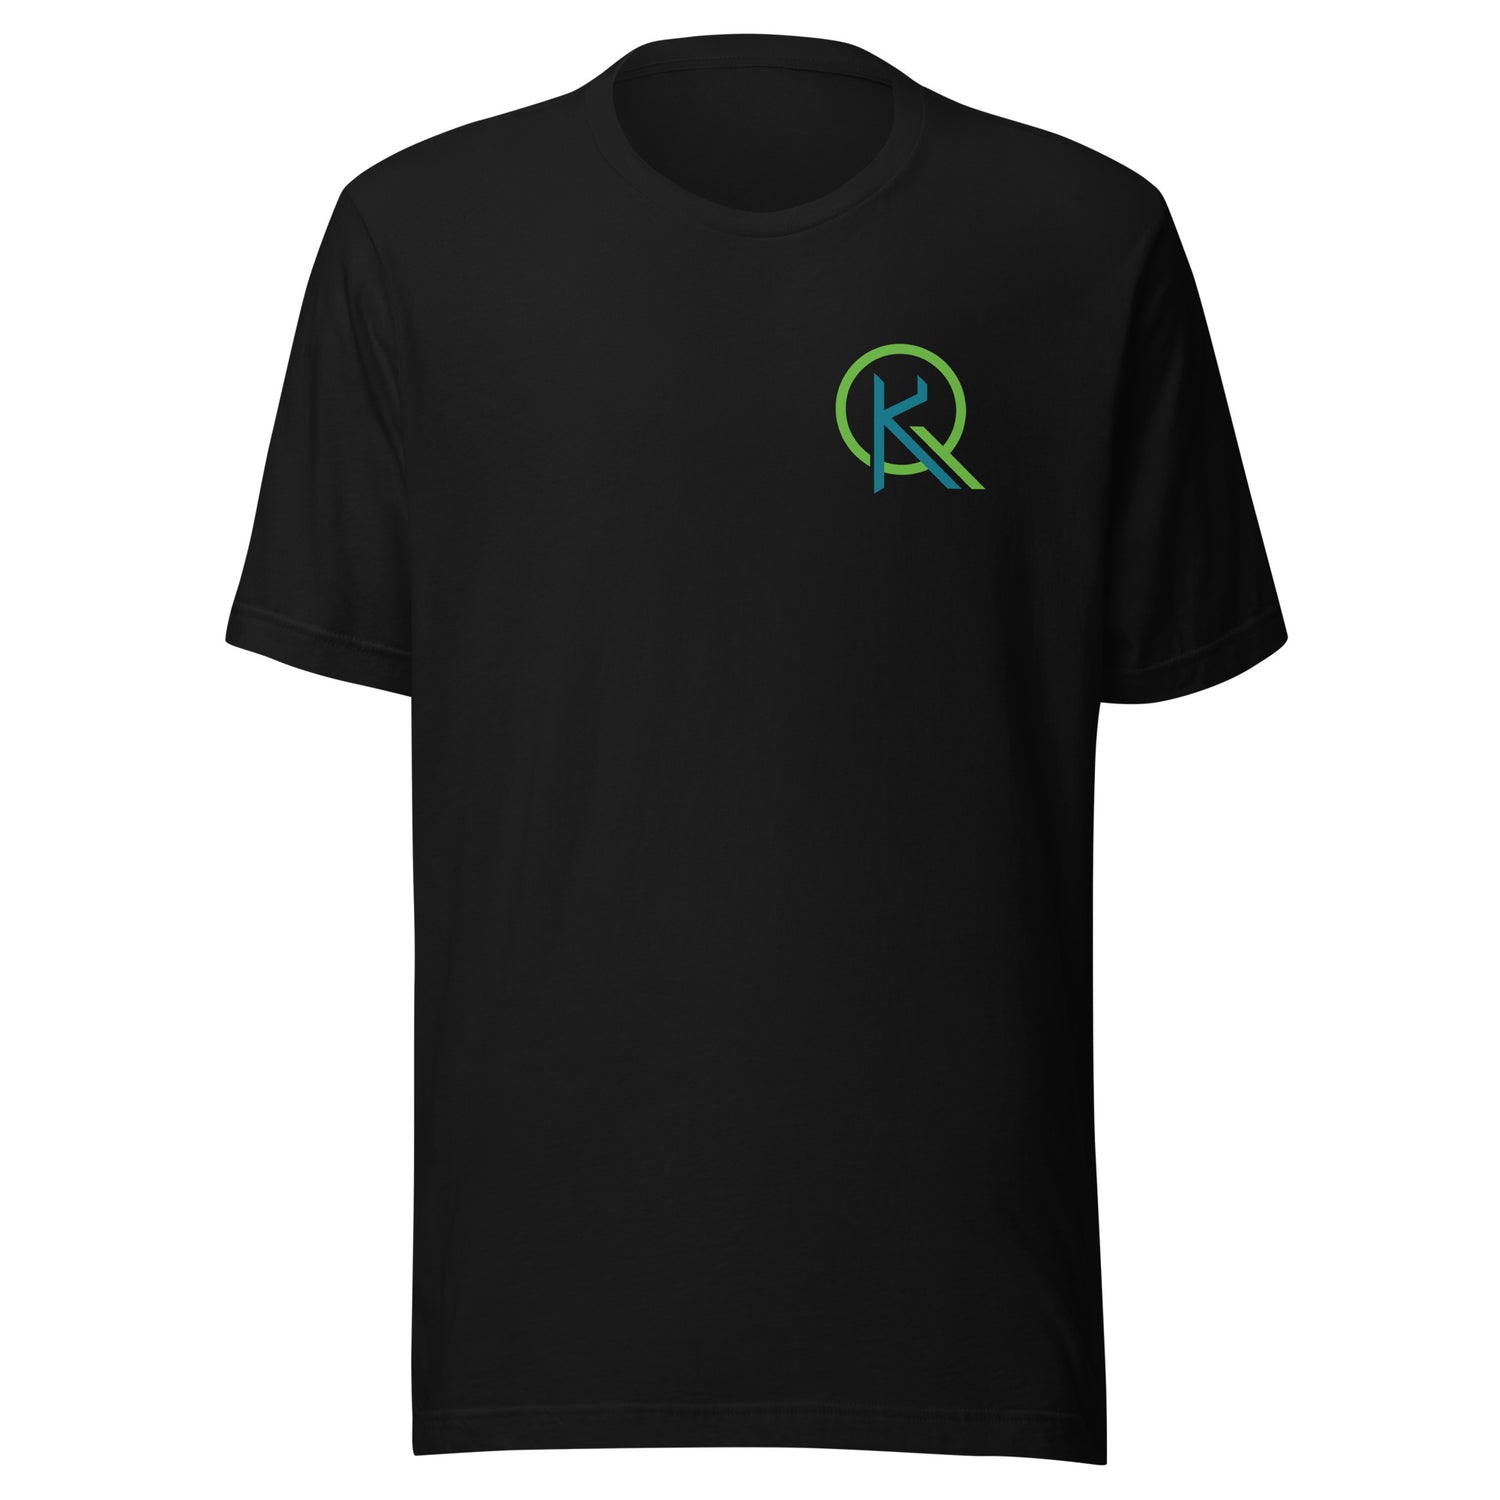 Kai Queen "Essential" t-shirt - Fan Arch